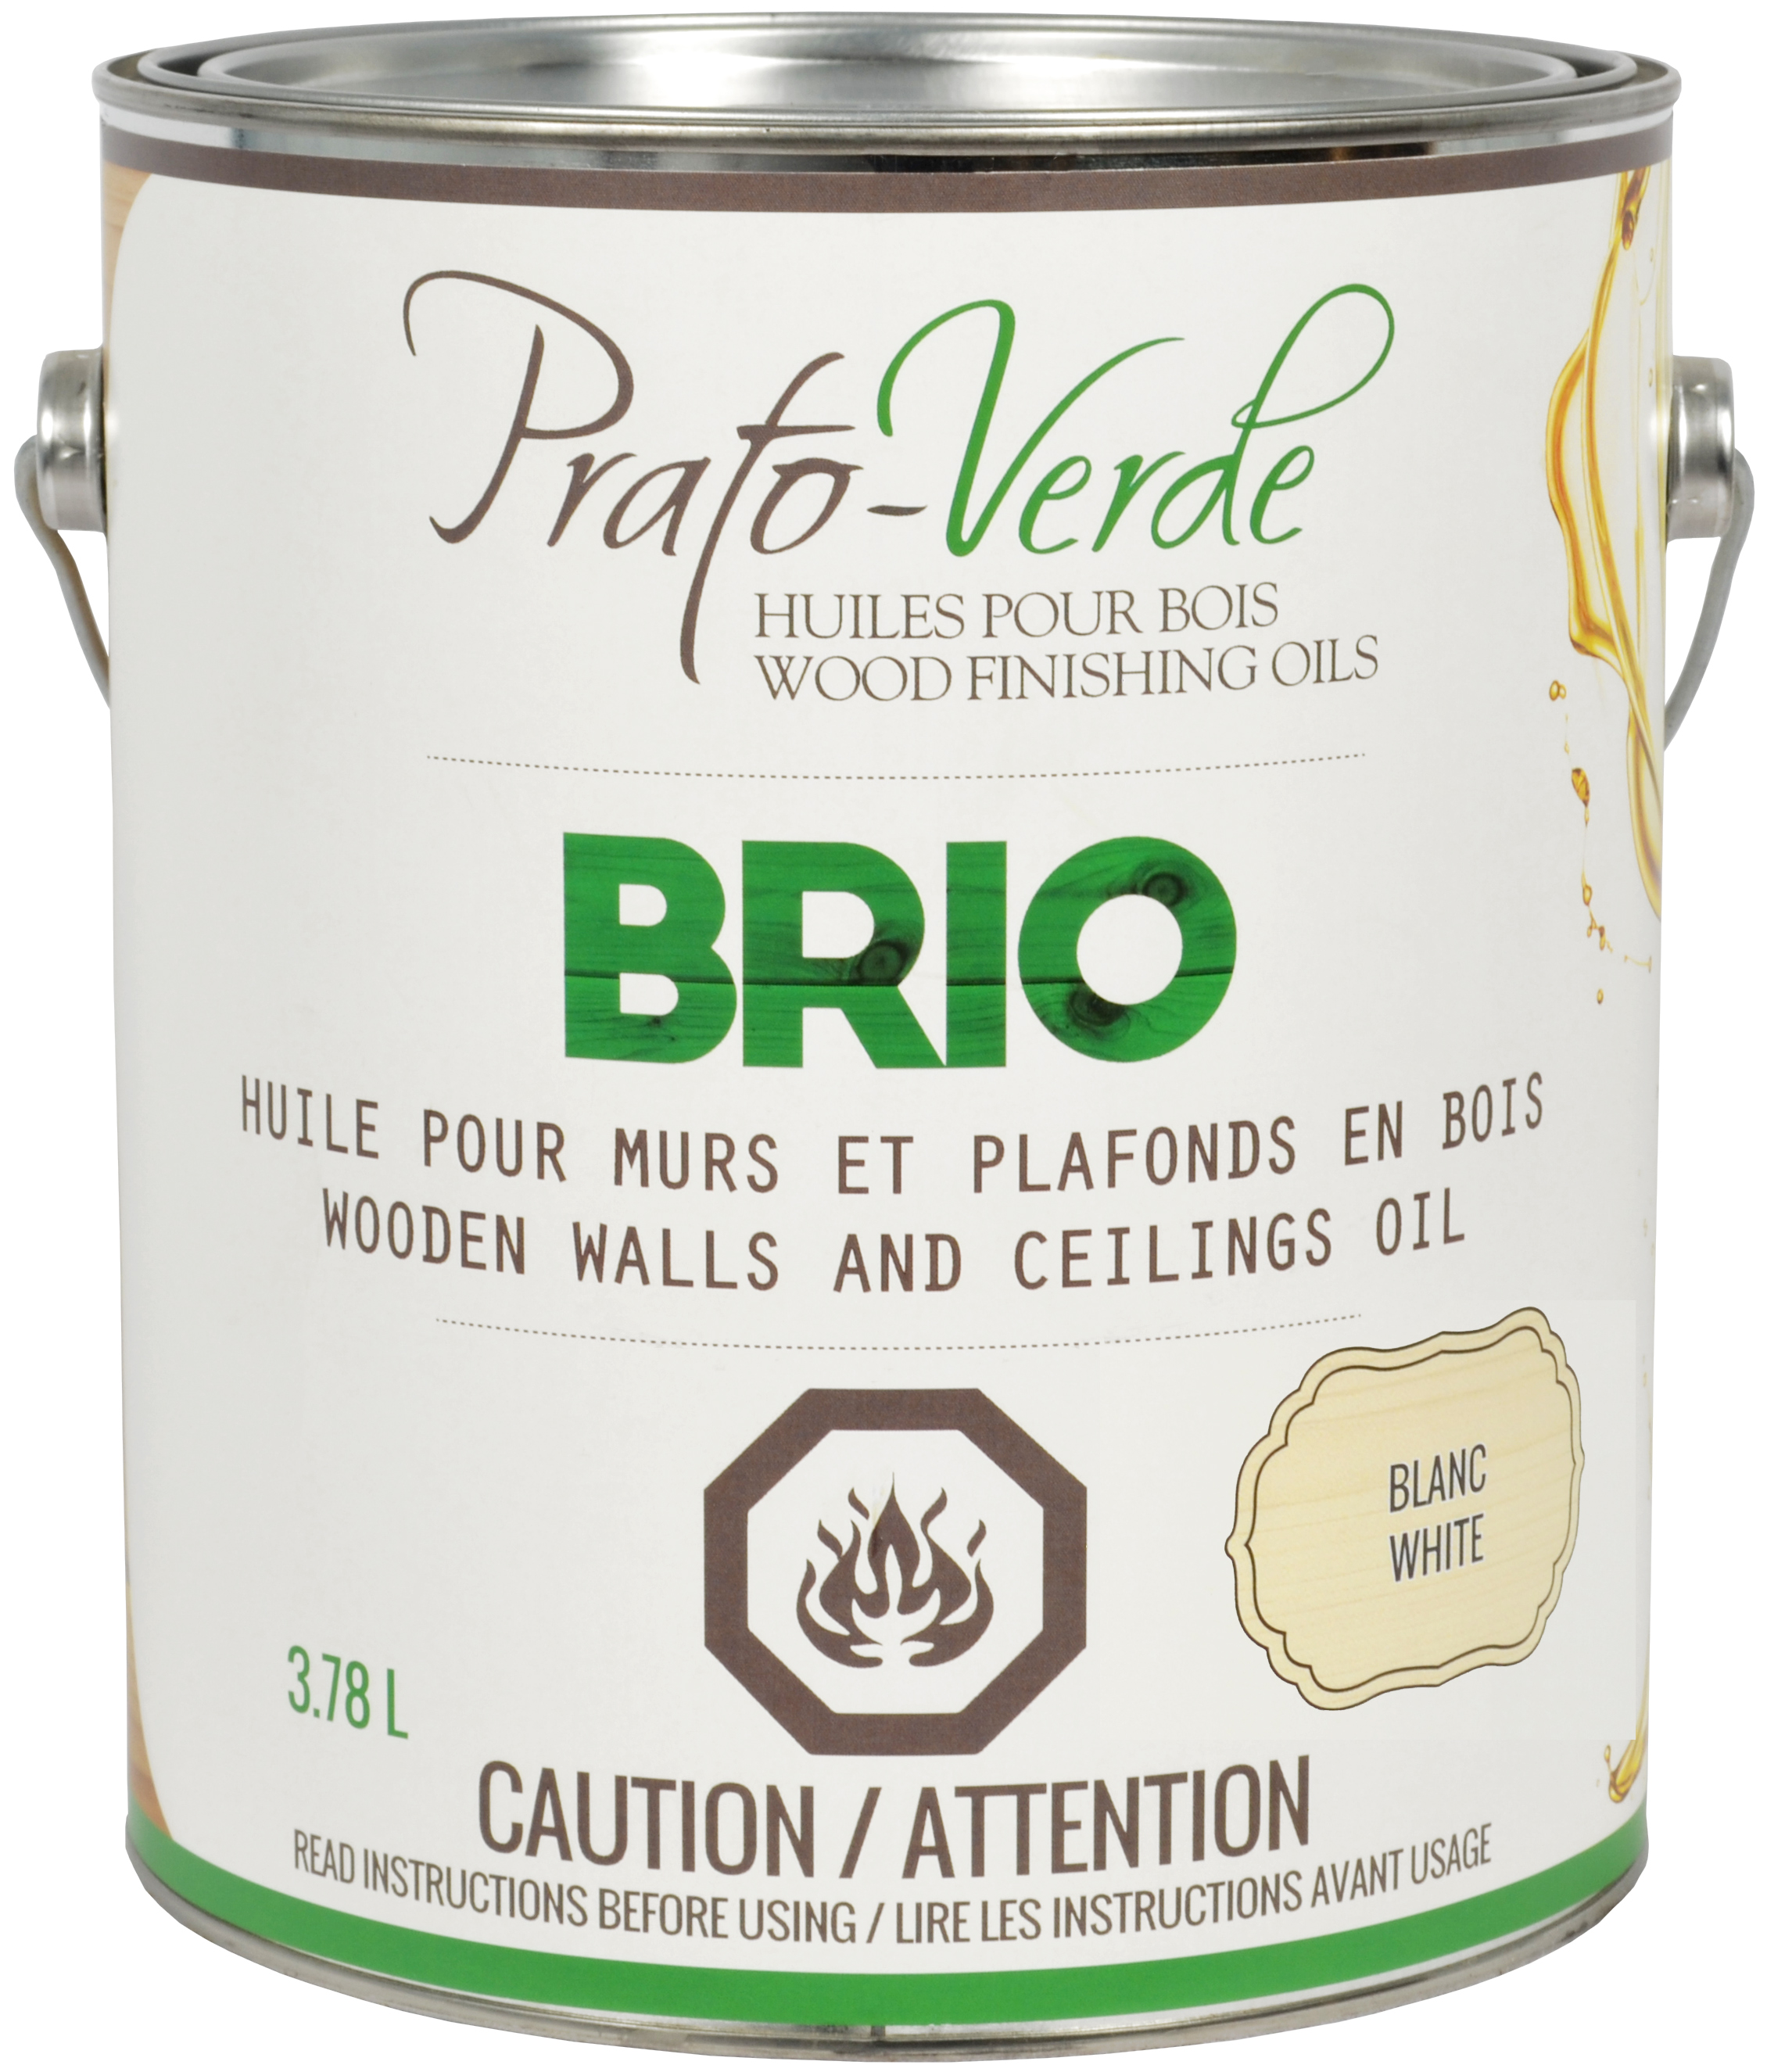 Brio - Huile pour murs et plafonds en bois - Prato-Verde - Huiles